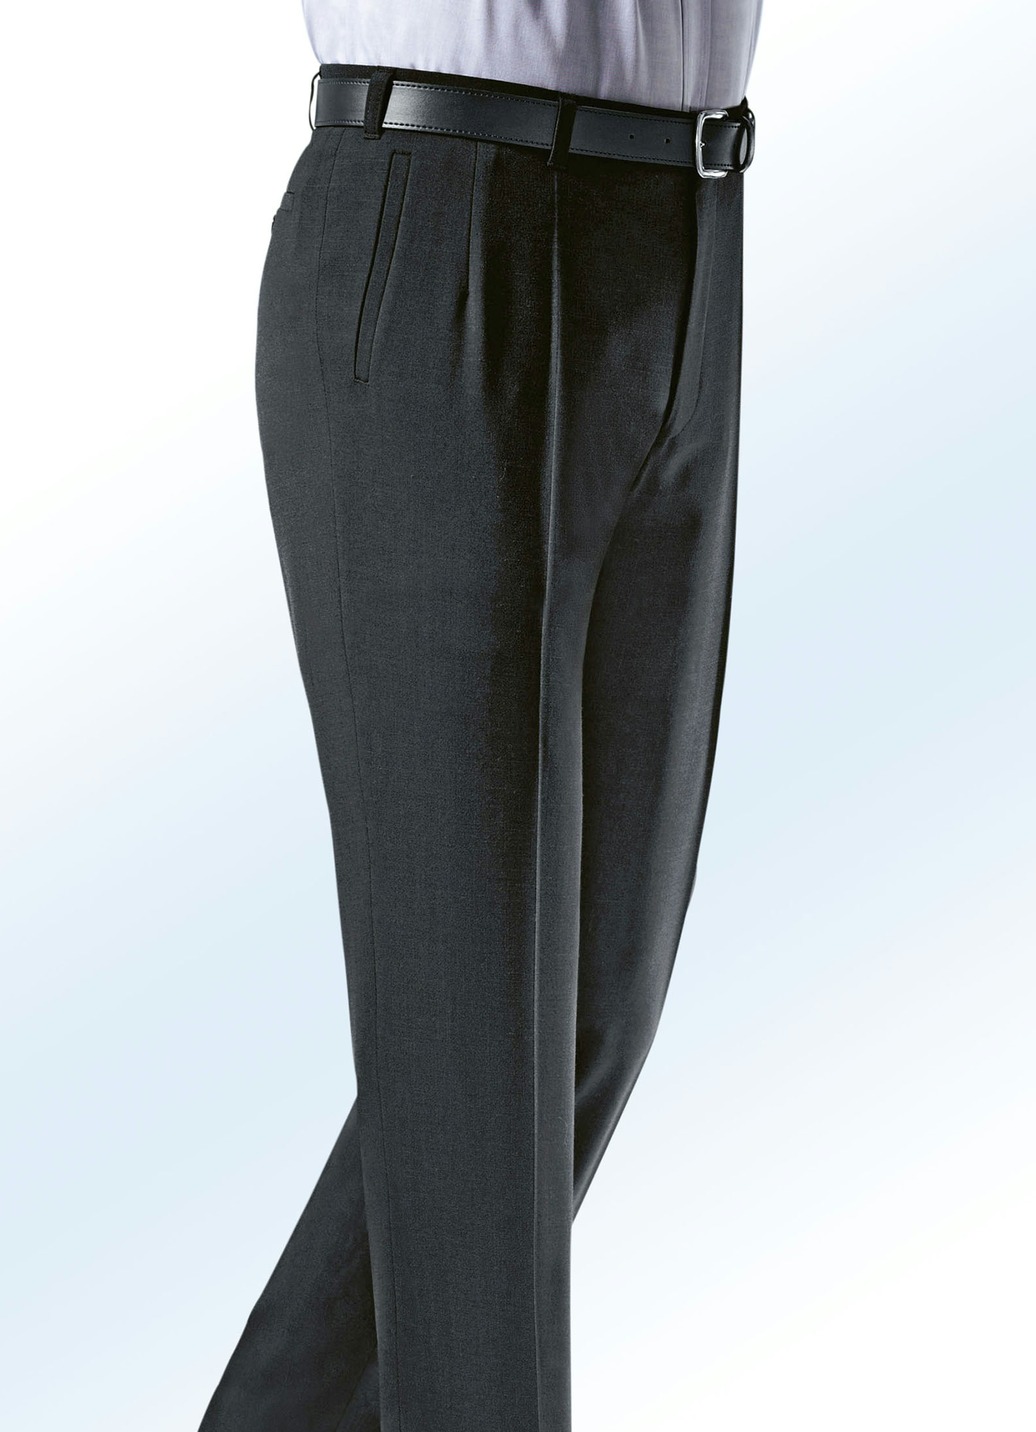 „Klaus Modelle“-Hose mit weichem Griff in 4 Farben, Anthrazit Meliert, Größe 30 von KLAUS MODELLE